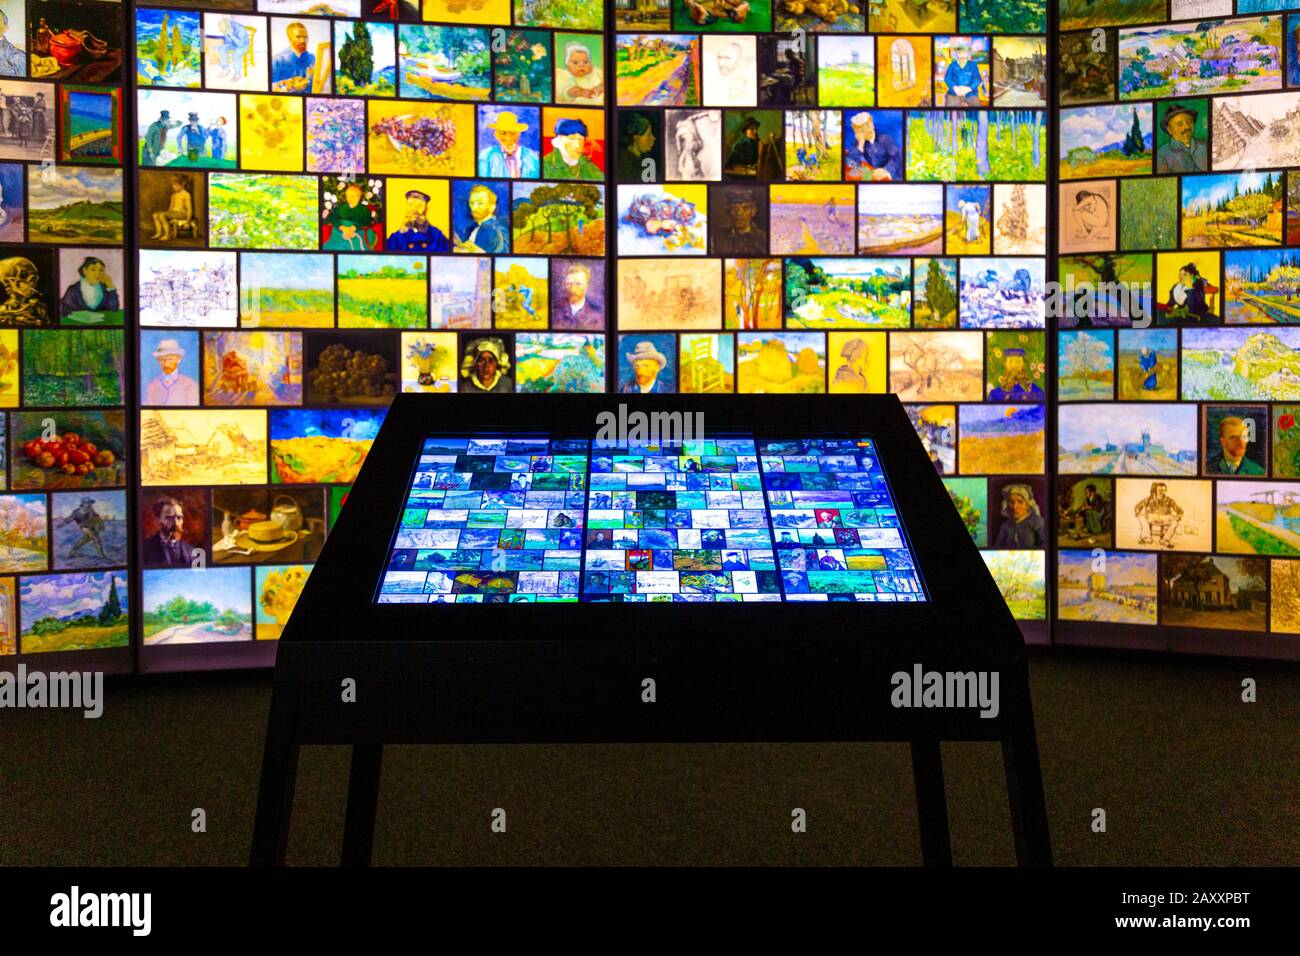 Pantalla interactiva en una exposición digital, Conozca Vincent van Gogh Experience 2020, Londres, Reino Unido Foto de stock